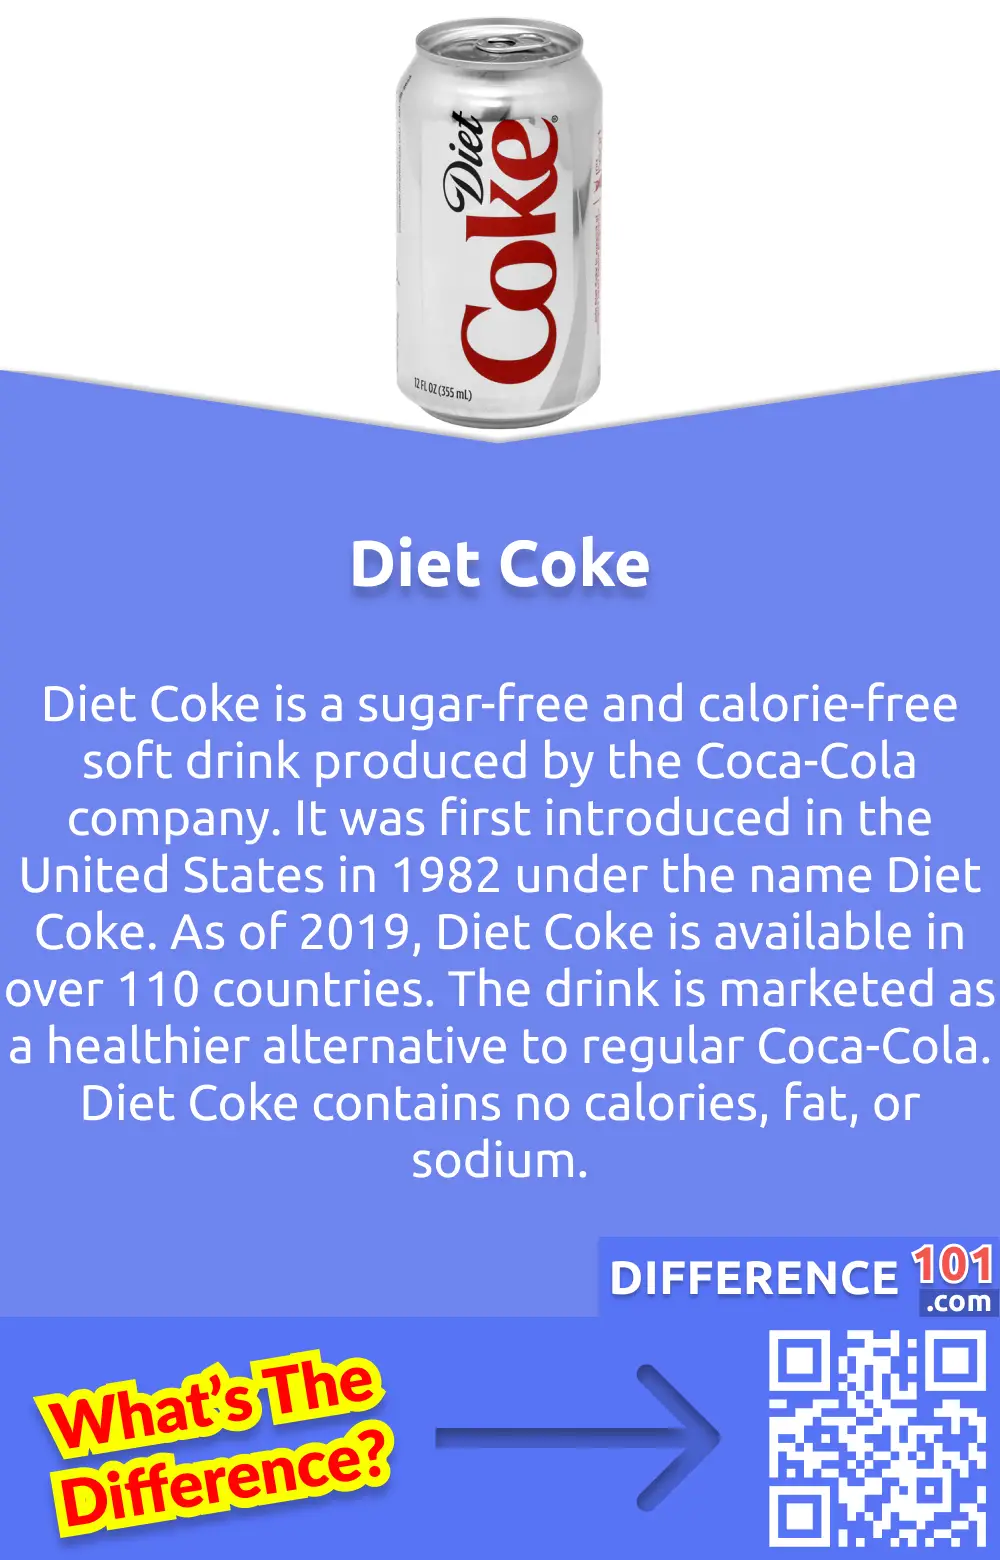 O que é Coca-Cola Diet? O Diet Coke é um refrigerante sem açúcar e sem calorias produzido pela empresa Coca-Cola. Foi introduzido nos Estados Unidos pela primeira vez em 1982 com o nome de Diet Coke. A partir de 2019, o Diet Coke está disponível em mais de 110 países. A bebida é comercializada como uma alternativa mais saudável para a Coca-Cola comum. O Diet Coke não contém calorias, gordura ou sódio.